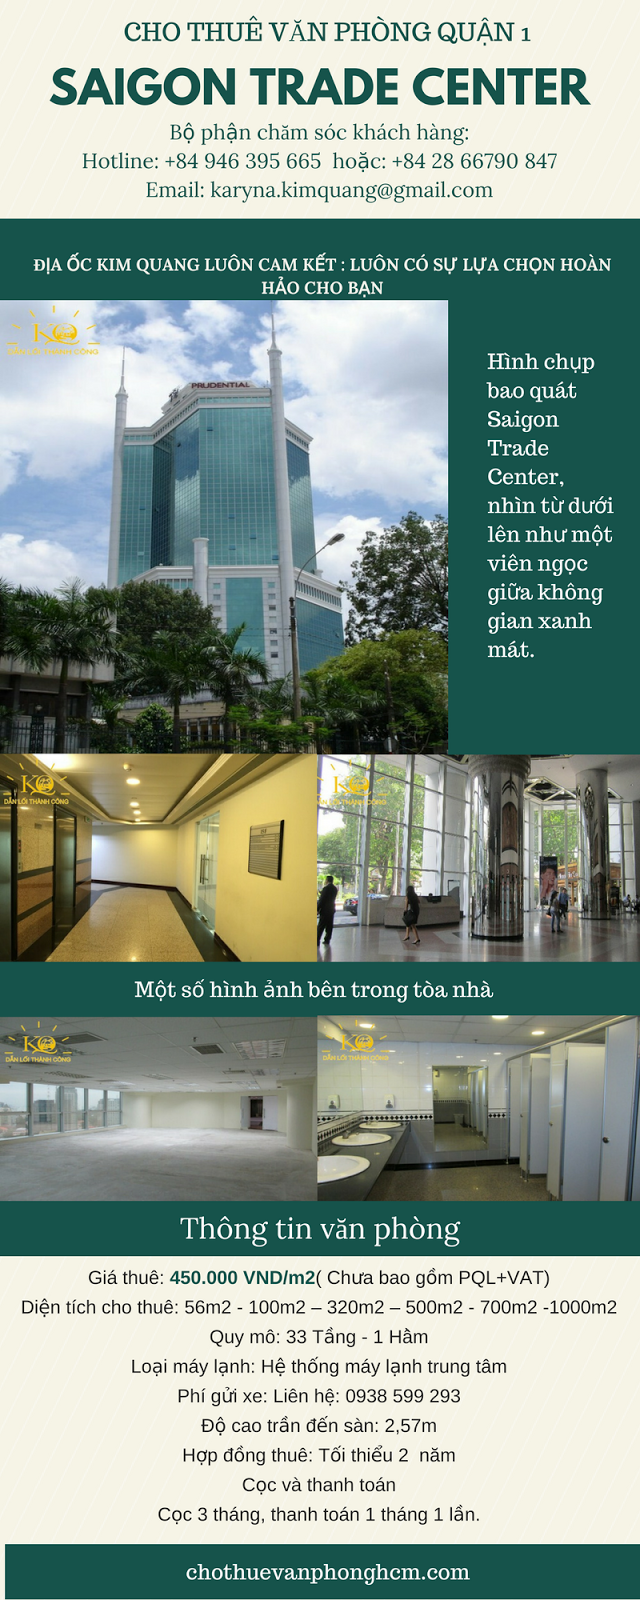 Cho thuê văn phòng quận 1 Saigon Trade Center